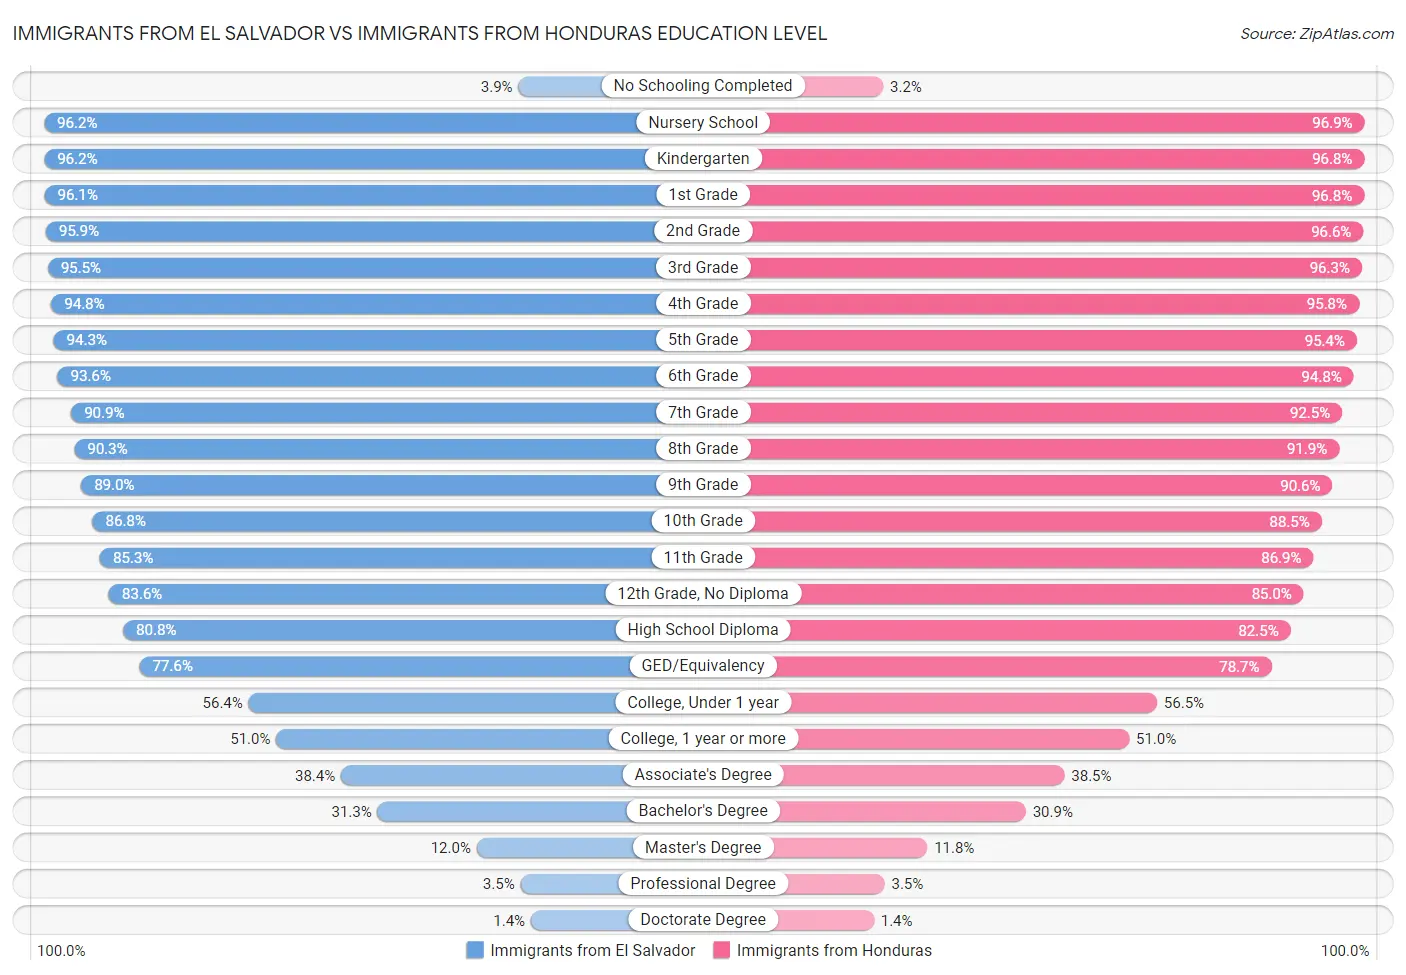 Immigrants from El Salvador vs Immigrants from Honduras Education Level